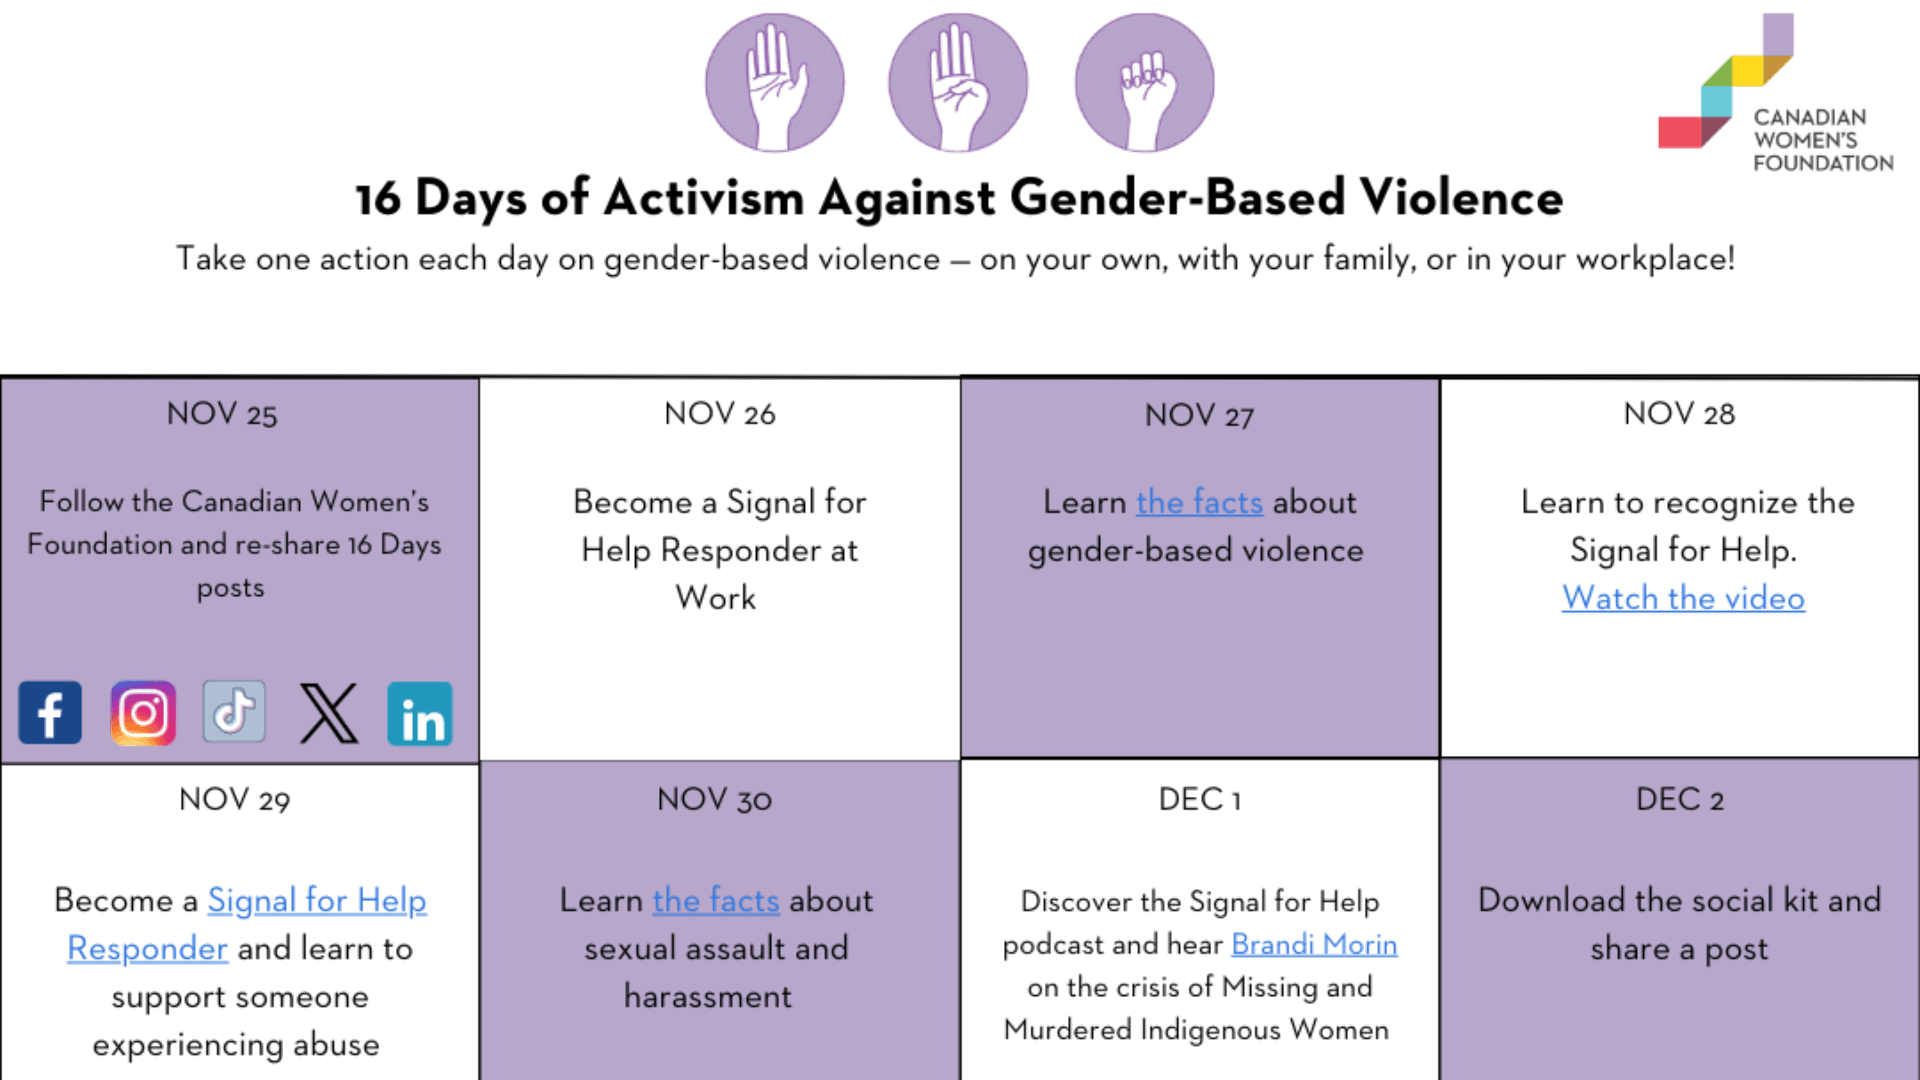 Image of the 16 Days of Activism Against Gender-Based Violence calendar.